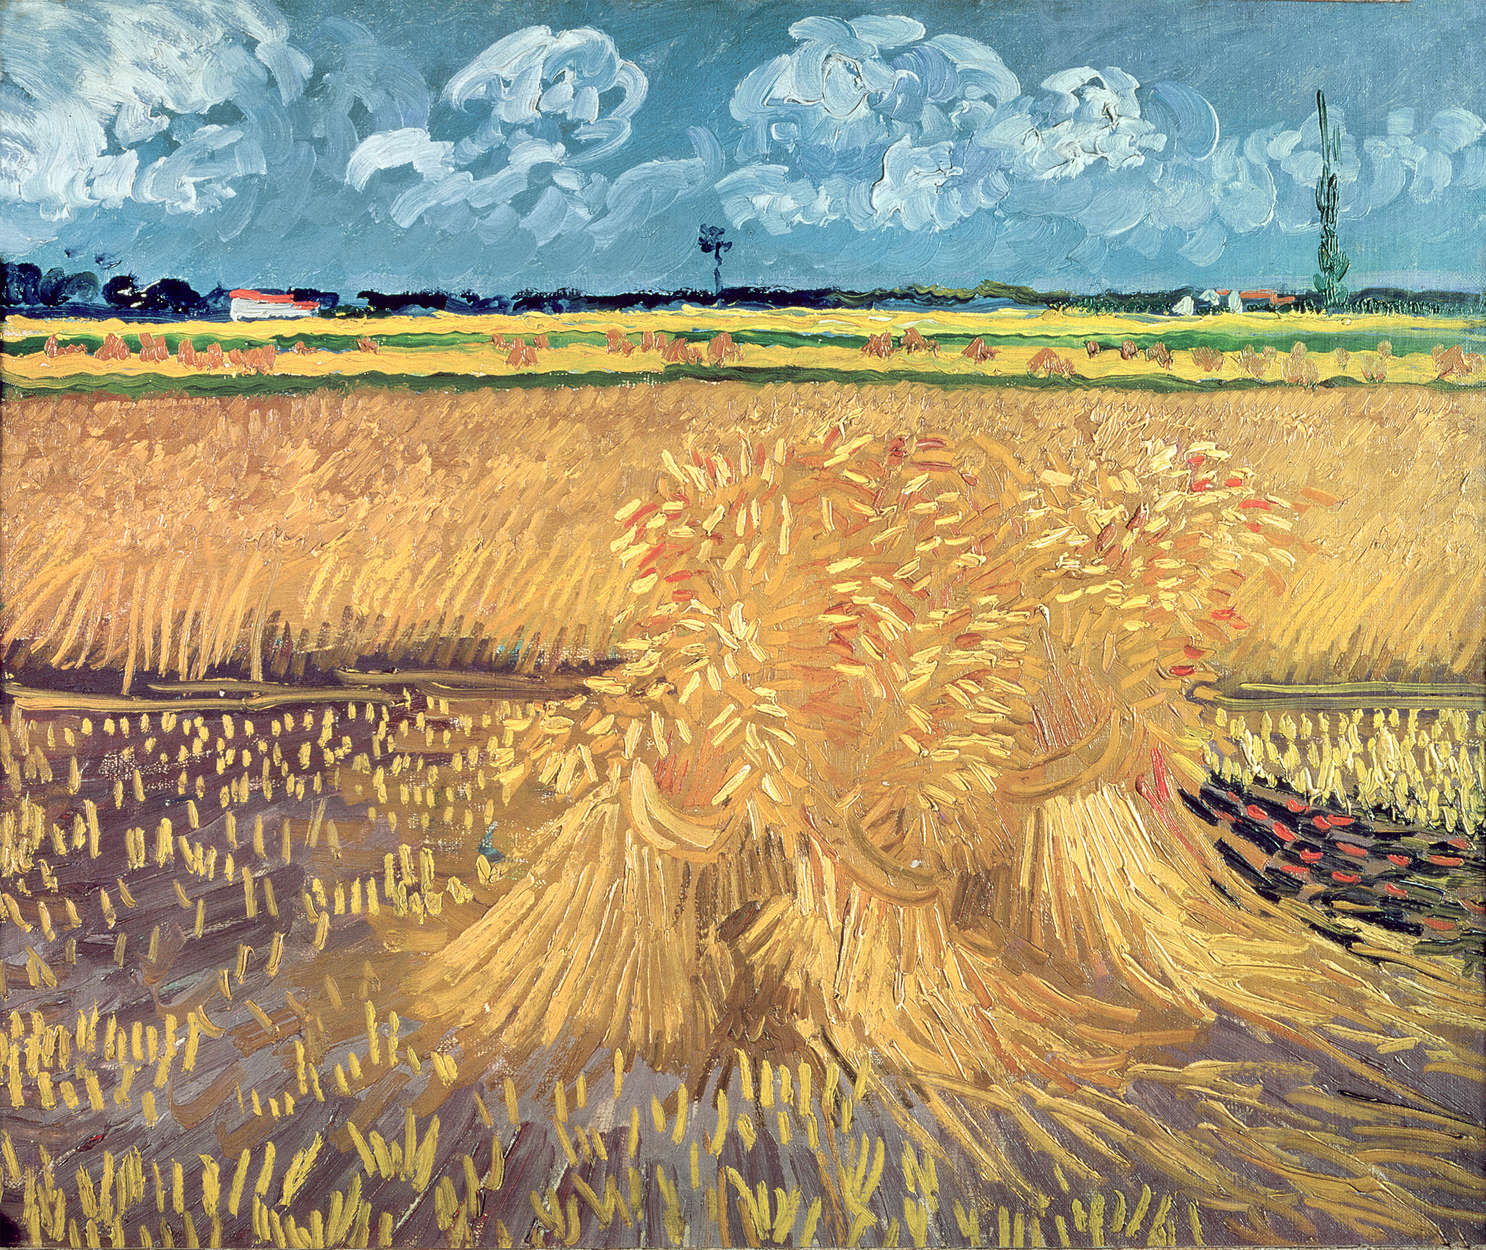             Papier peint "Corbeaux sur champ de blé" de Vincent van Gogh
        